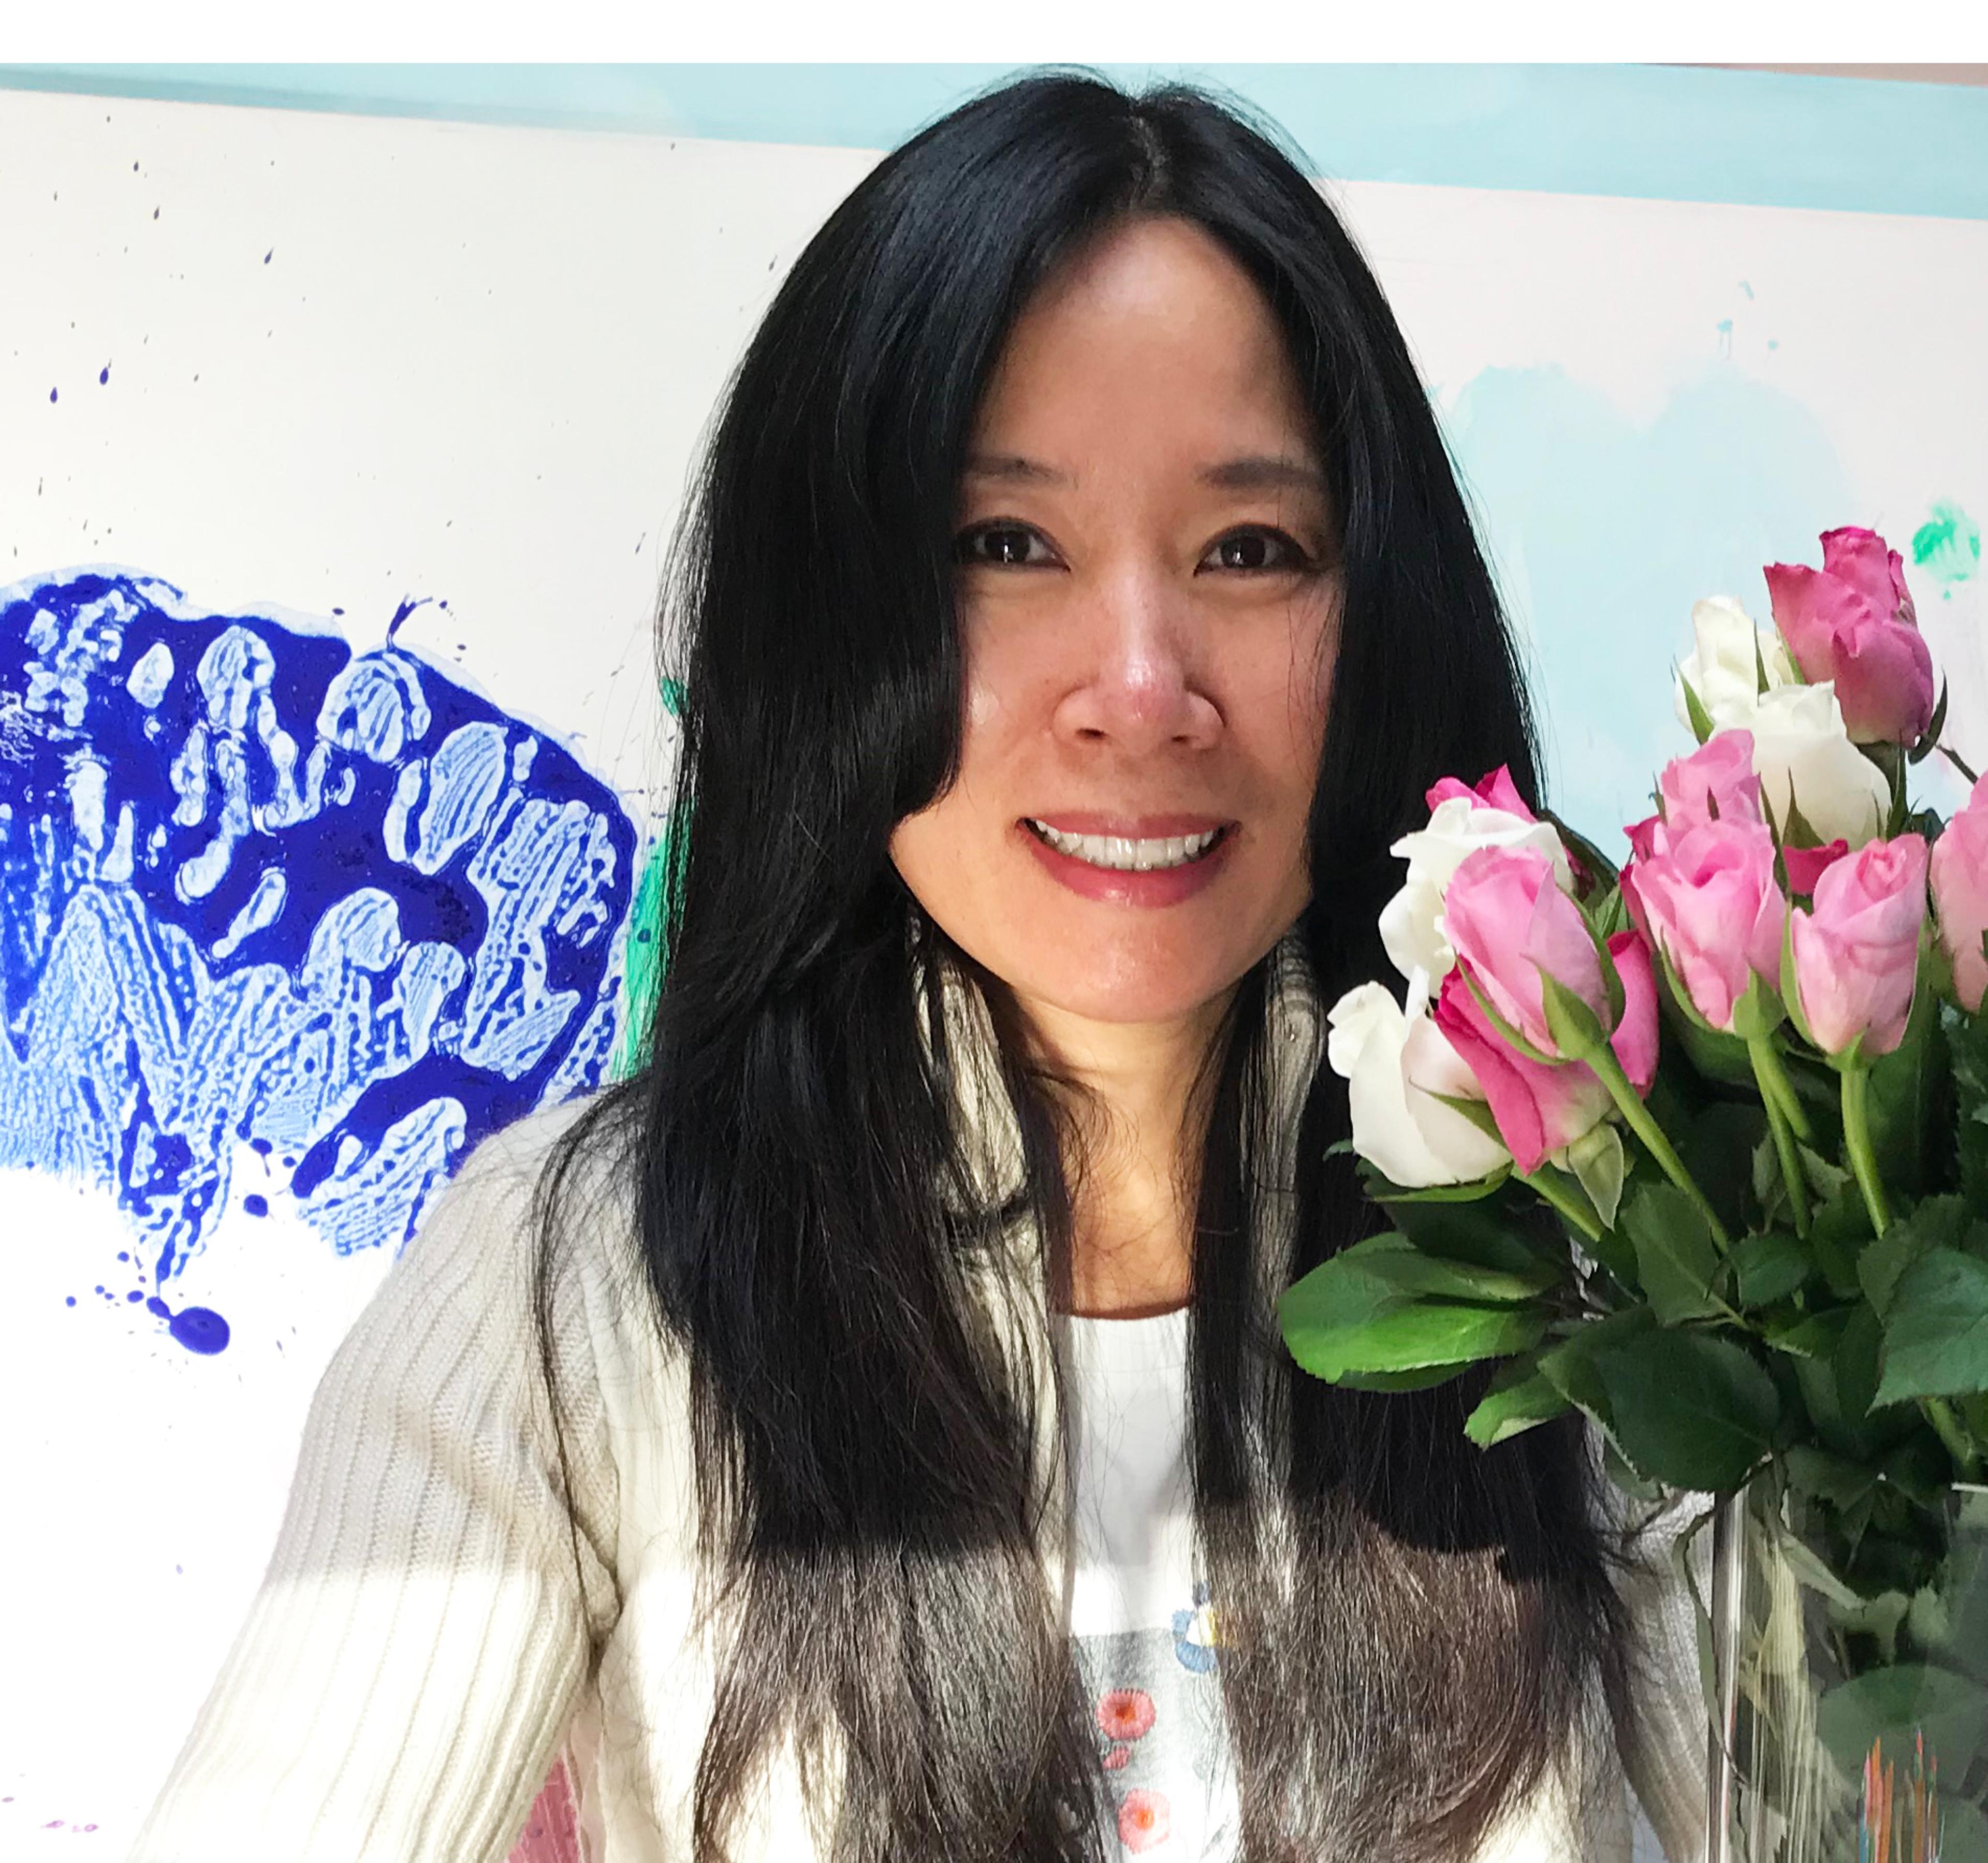 Portrait der Künstlerin Miye Lee, neben ihr eine Malerei und ein Blumenstrauß